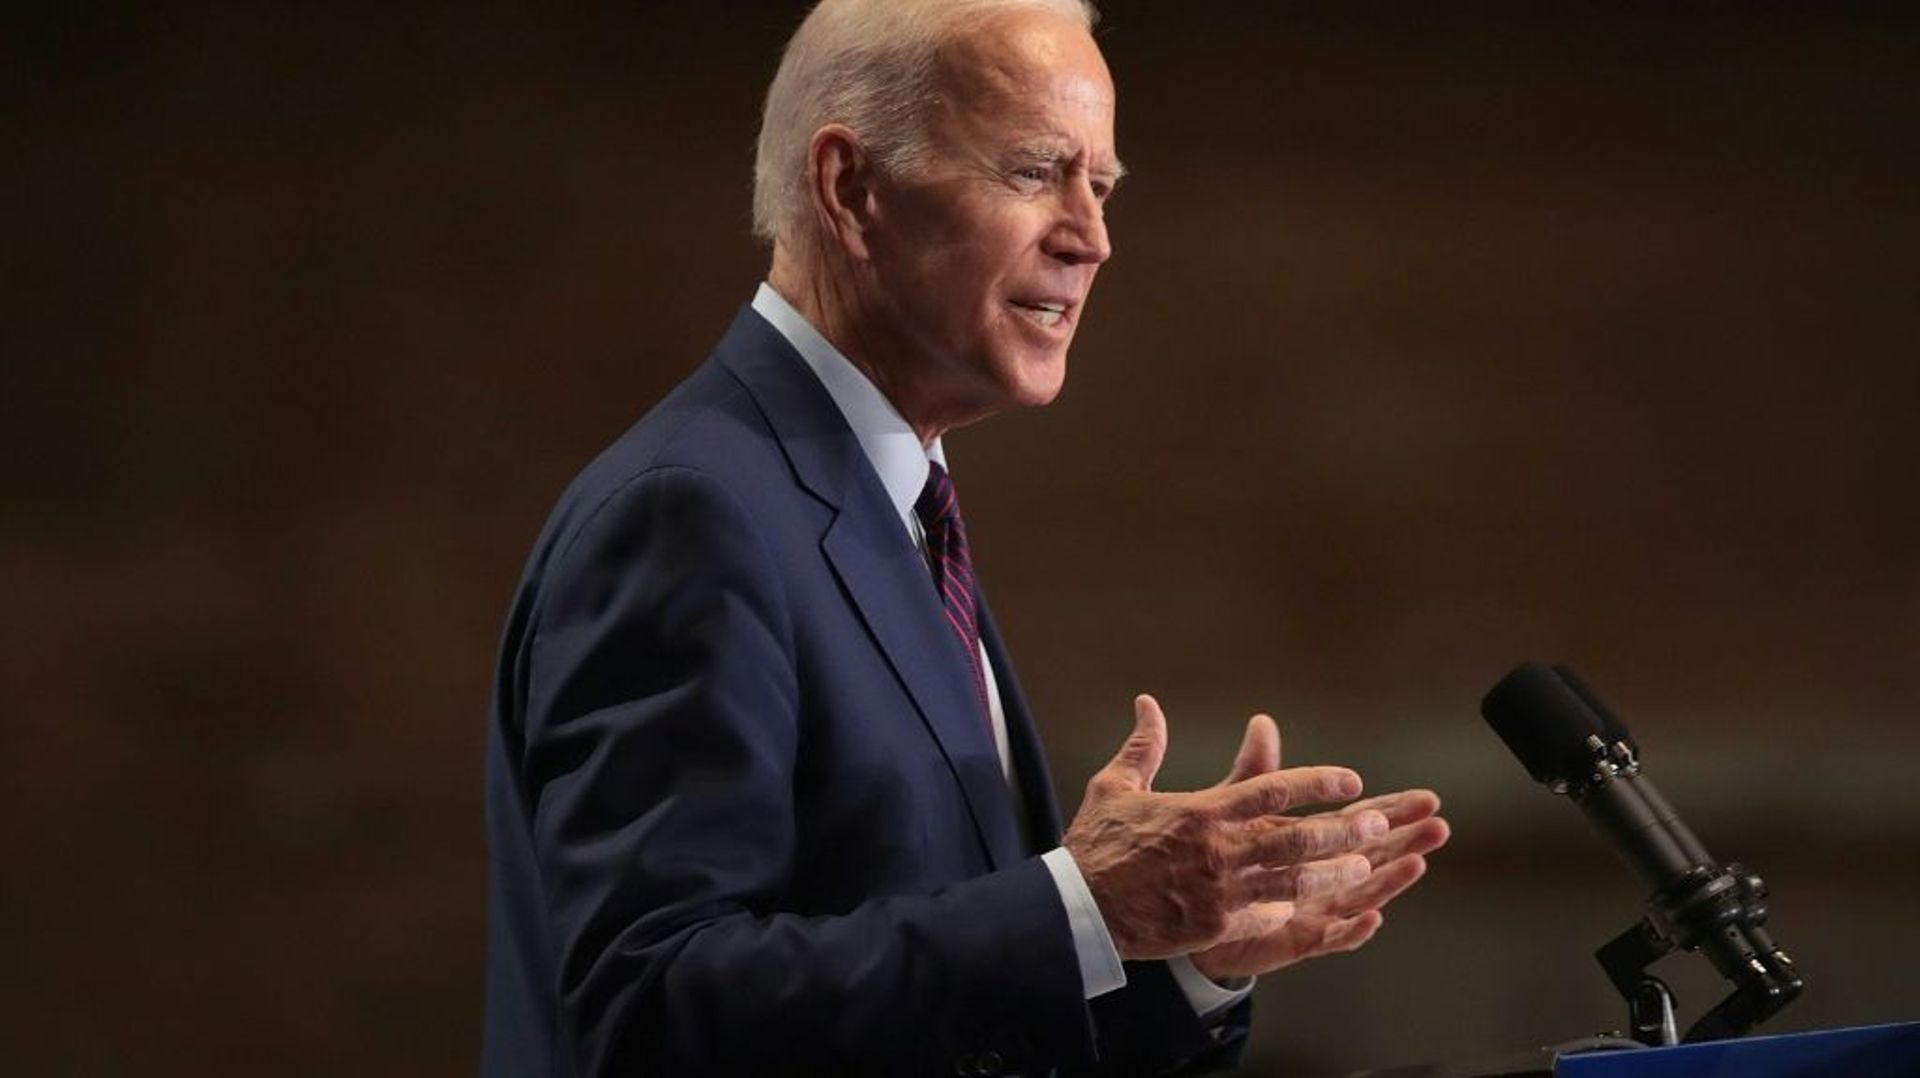 Le candidat à l'investiture démocrate Joe Biden, à Chicago, le 28 juin 2019 